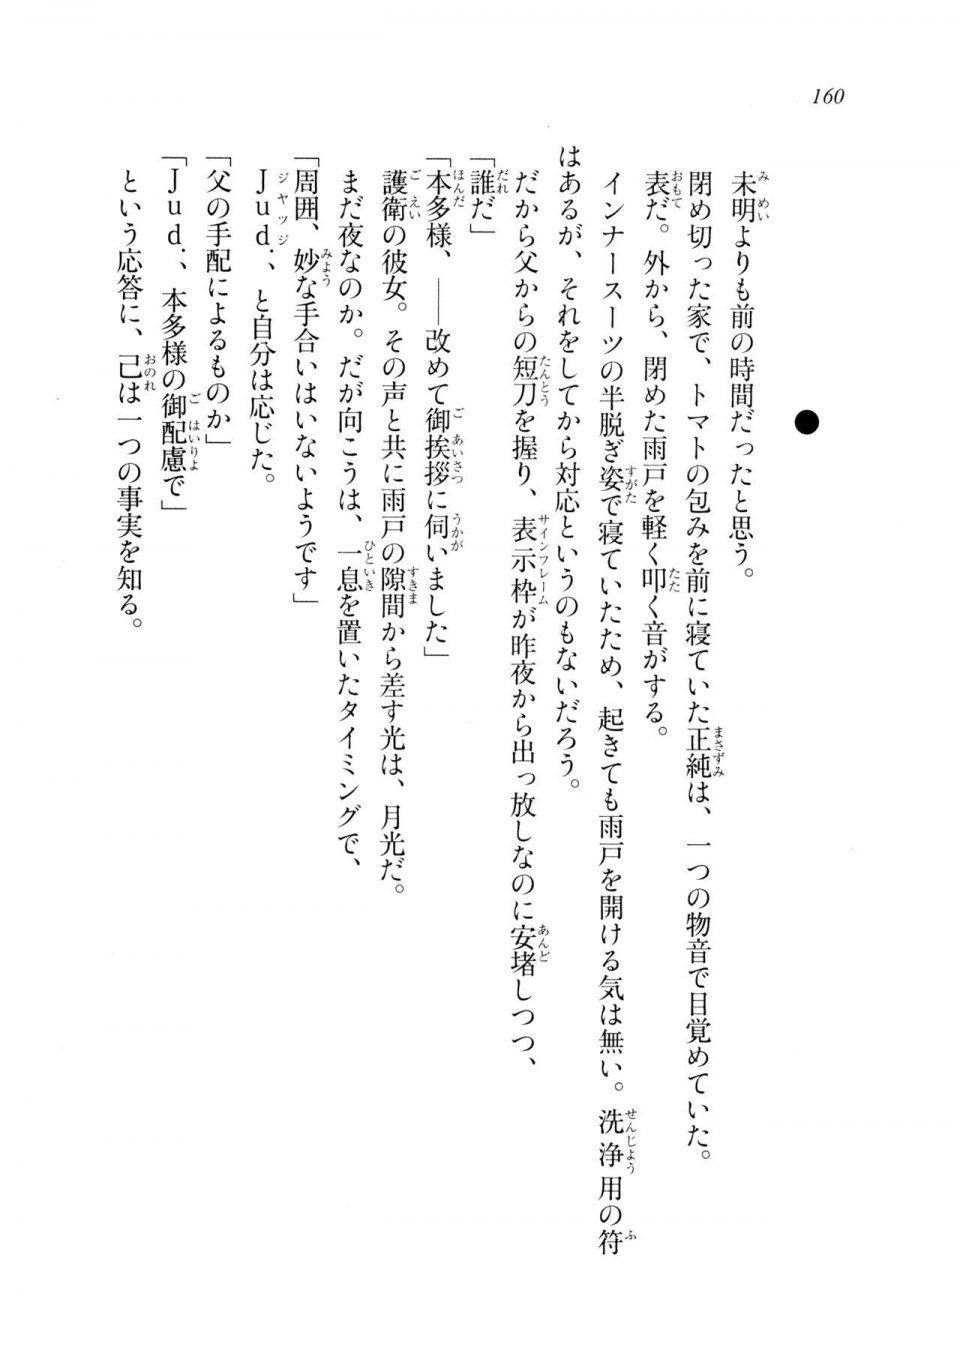 Kyoukai Senjou no Horizon LN Sidestory Vol 2 - Photo #158